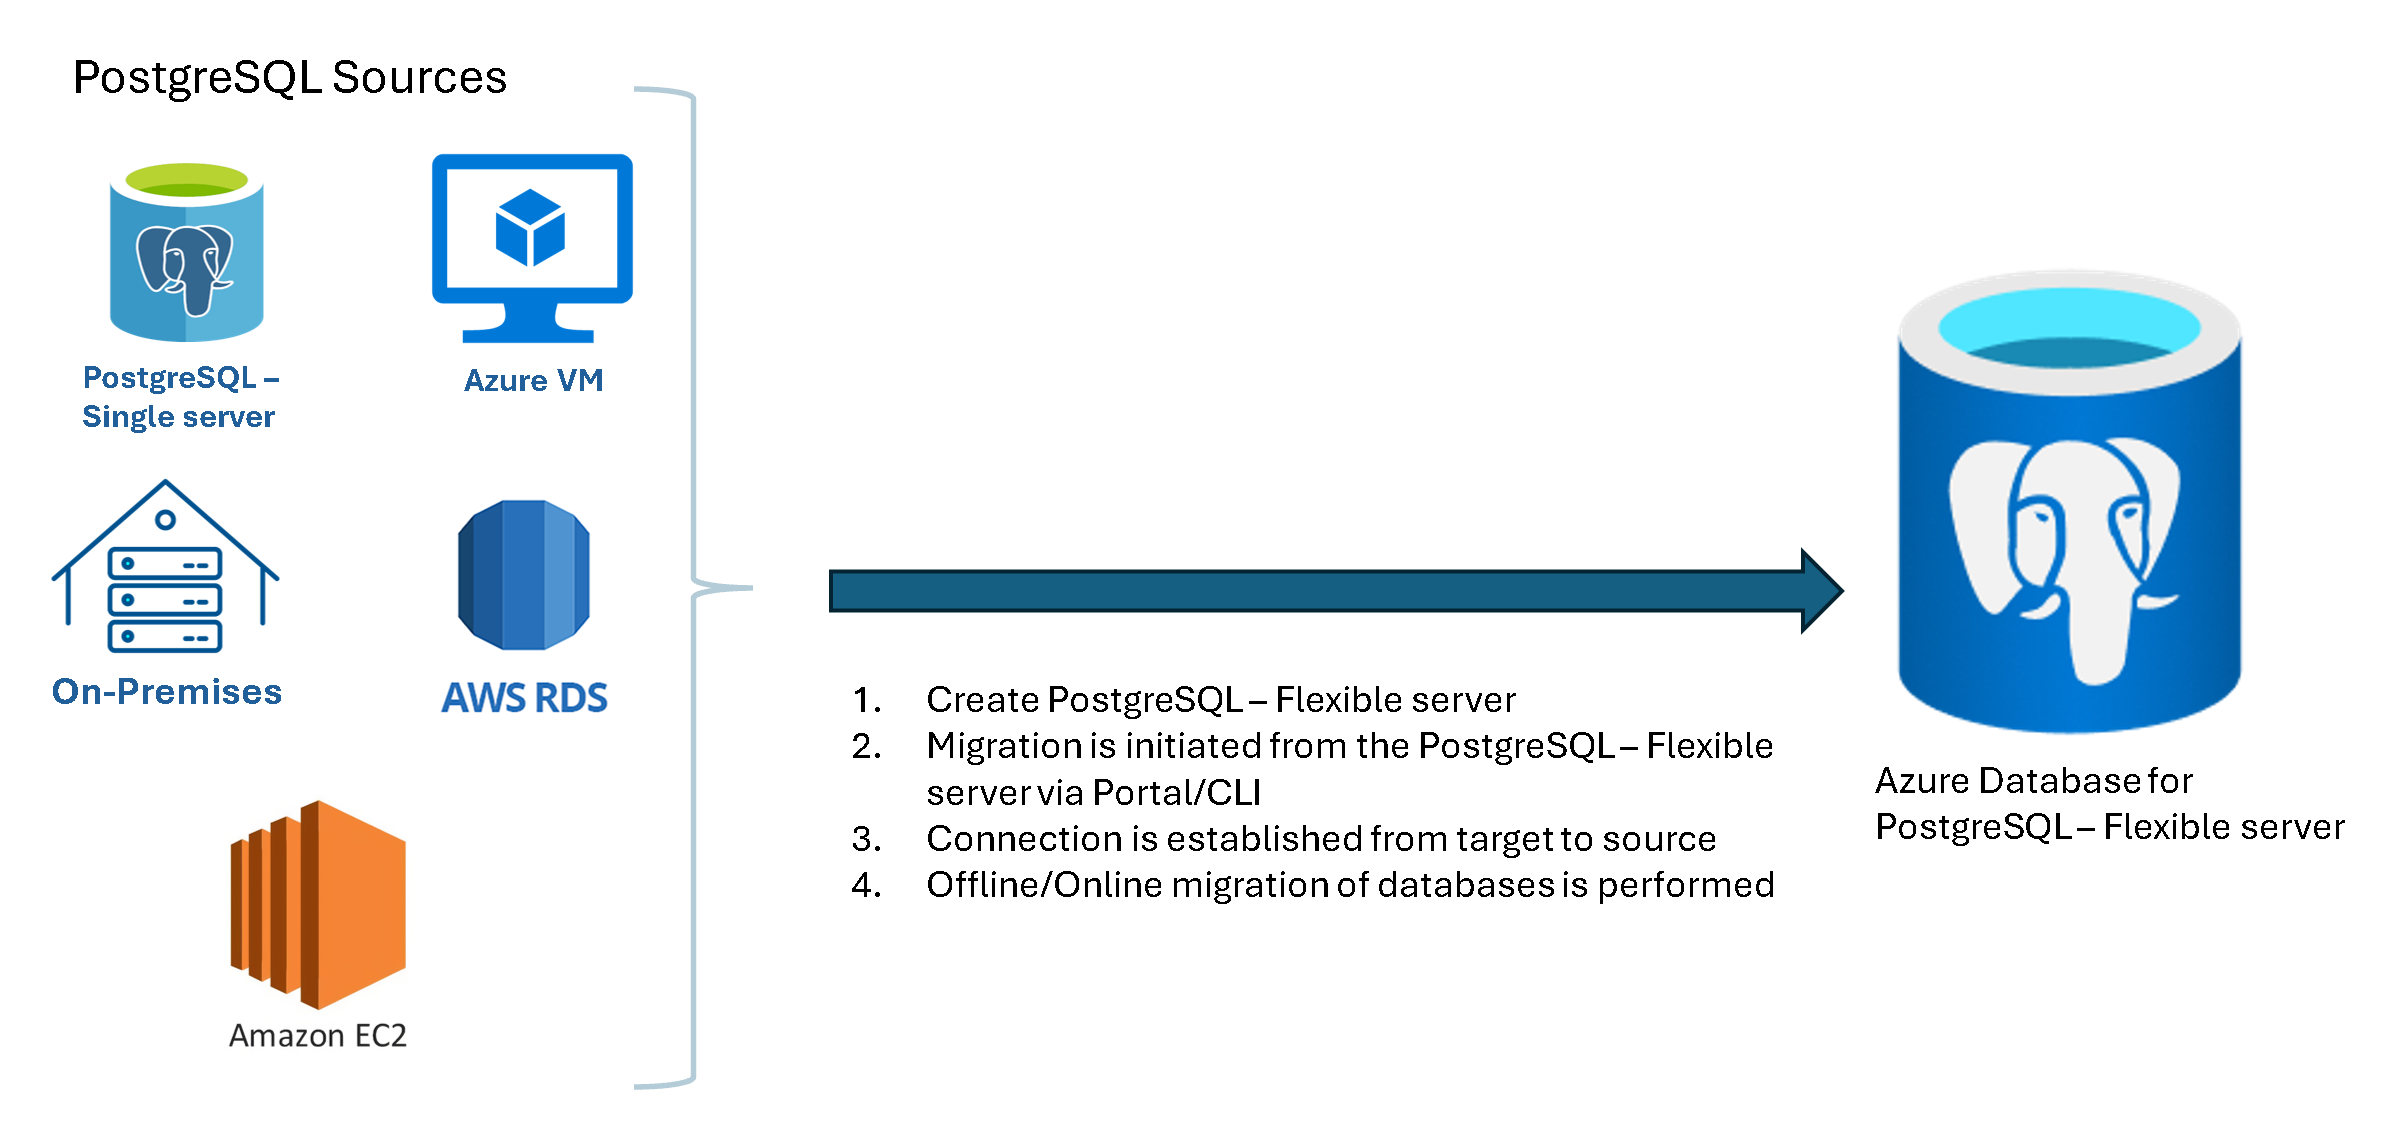 Skärmbild av olika PostgreSQL-källor.